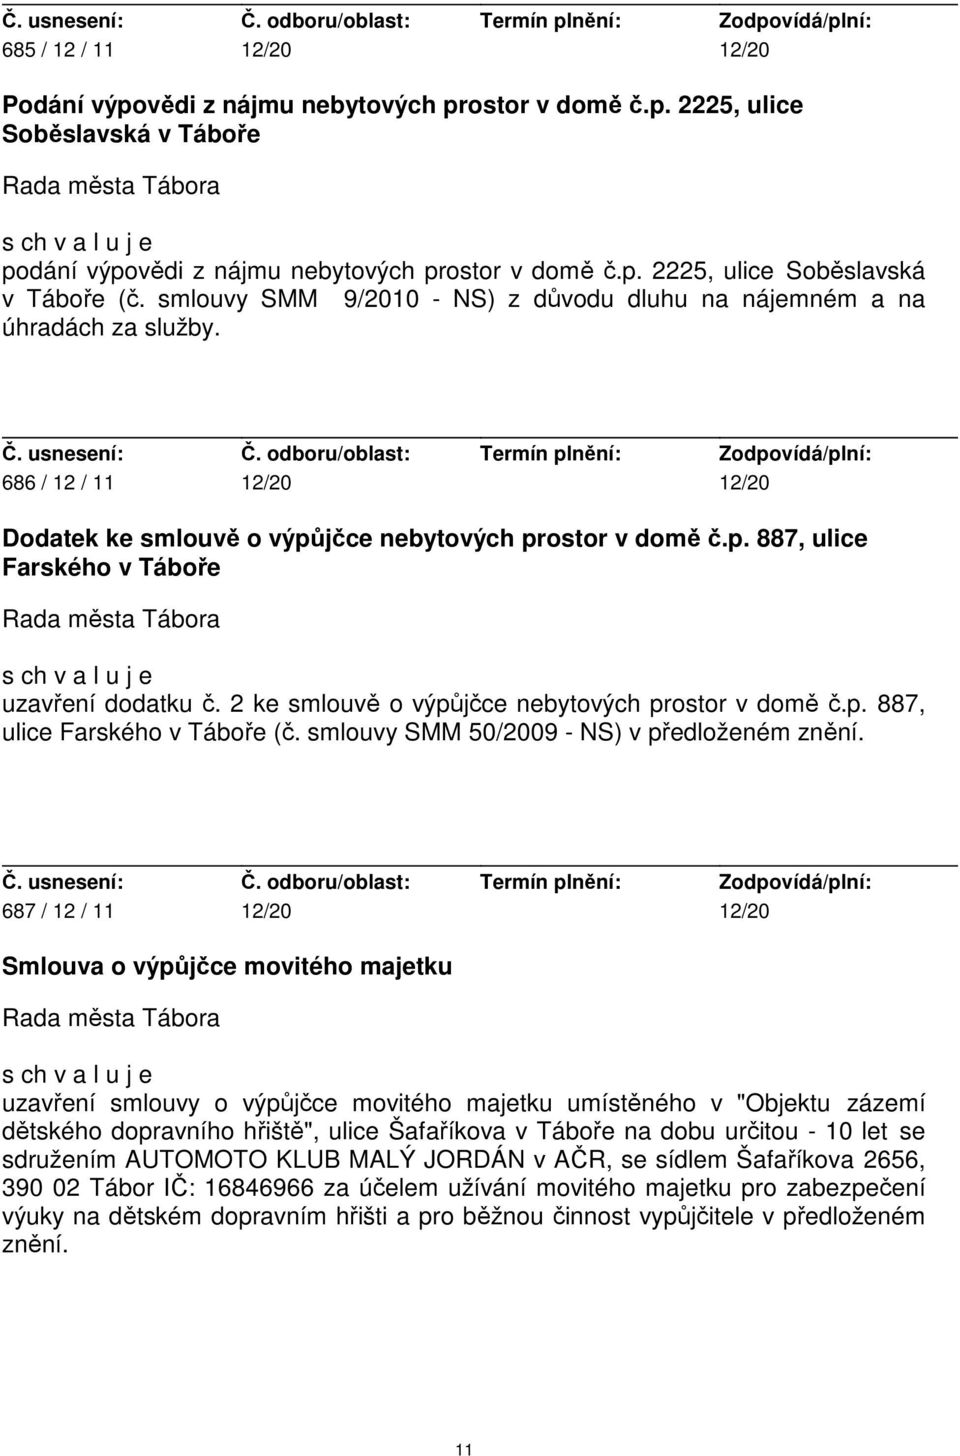 2 ke smlouvě o výpůjčce nebytových prostor v domě č.p. 887, ulice Farského v Táboře (č. smlouvy SMM 50/2009 - NS) v předloženém znění.